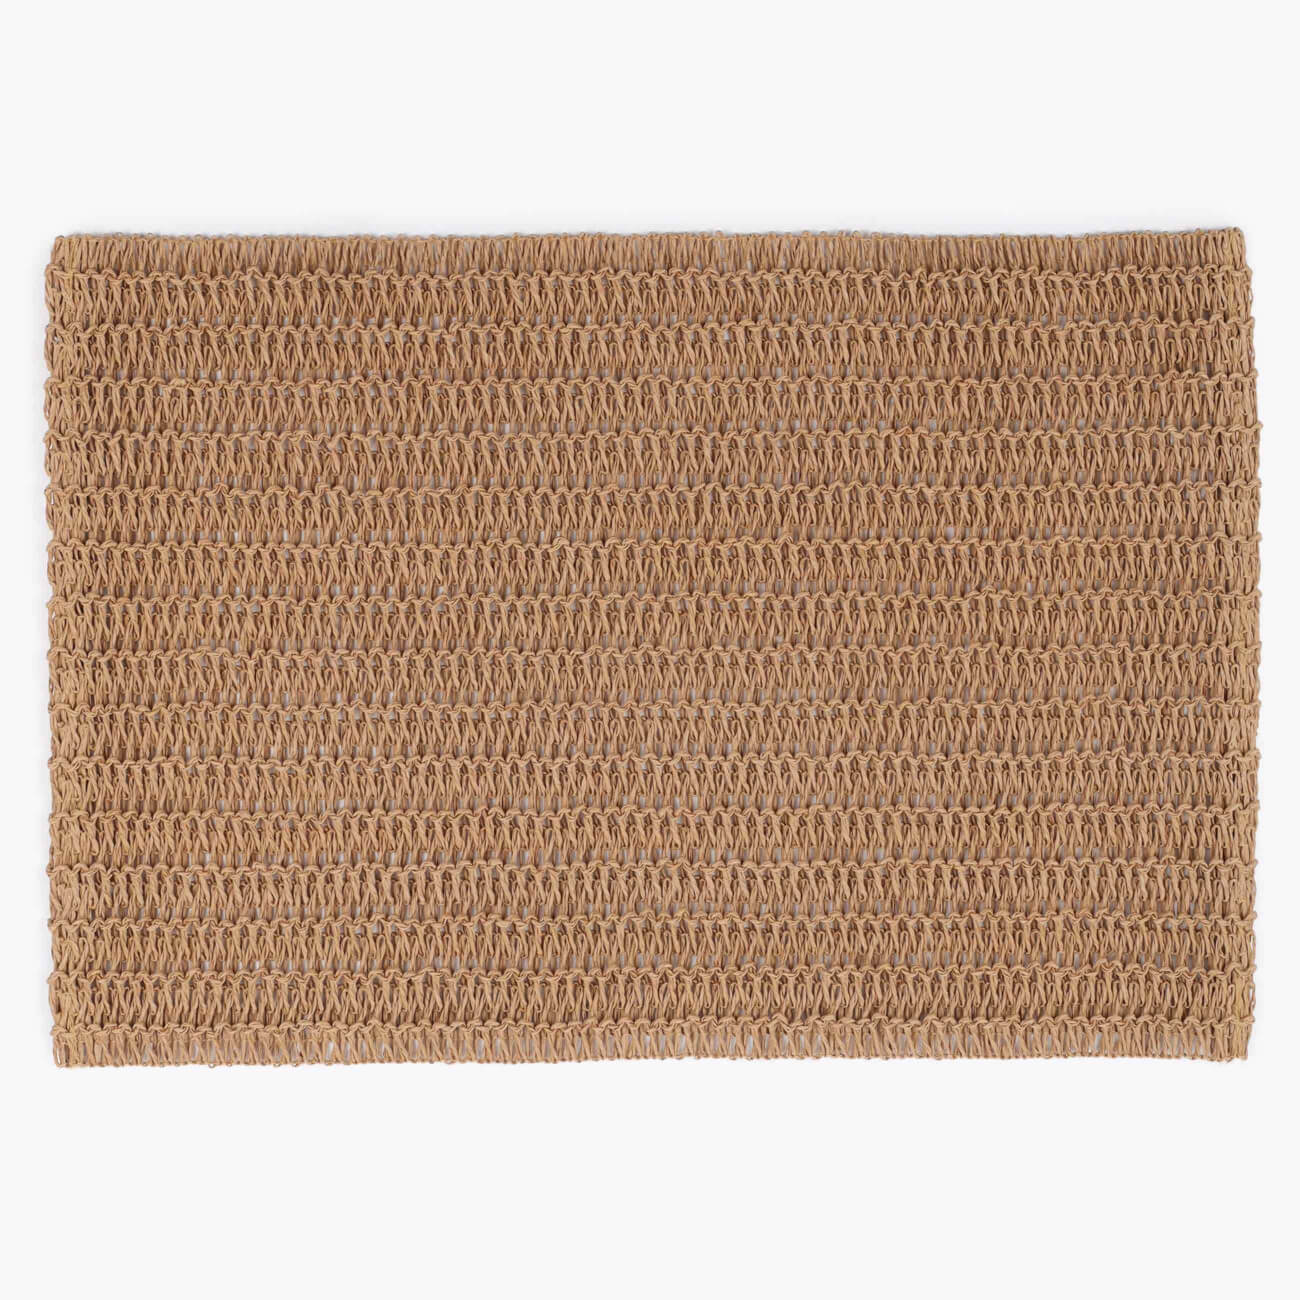 Салфетка под приборы, 30x45 см, целлюлоза, прямоугольная, коричневая, Straw салфетка под приборы 30x45 см пвх прямоугольная бежево коричневая полосы mats